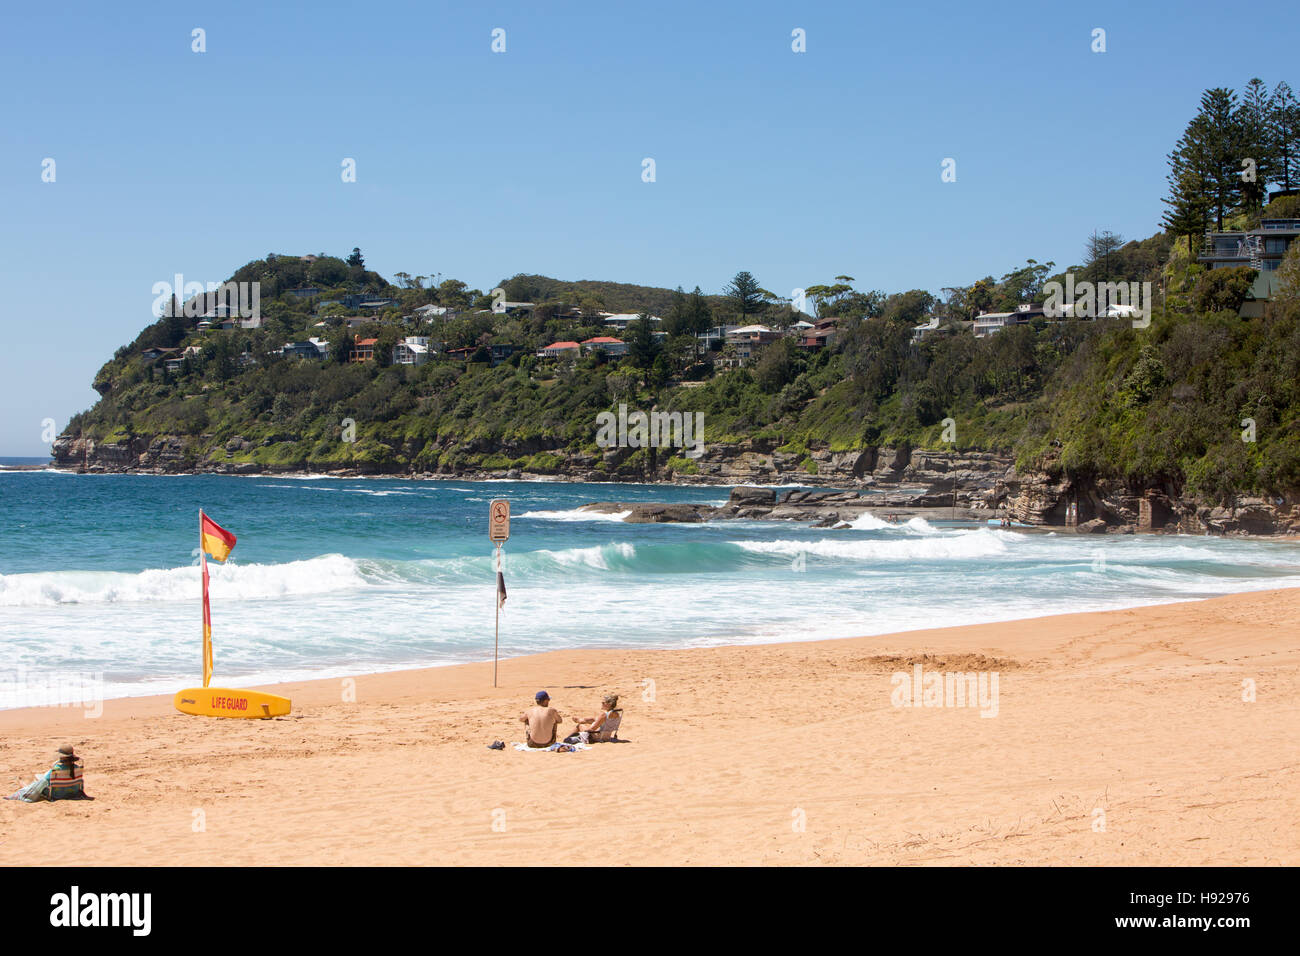 Plage de la baleine, l'une des plages du nord de Sydney dans l'heure d'été, Sydney, New South Wales, Australie Banque D'Images